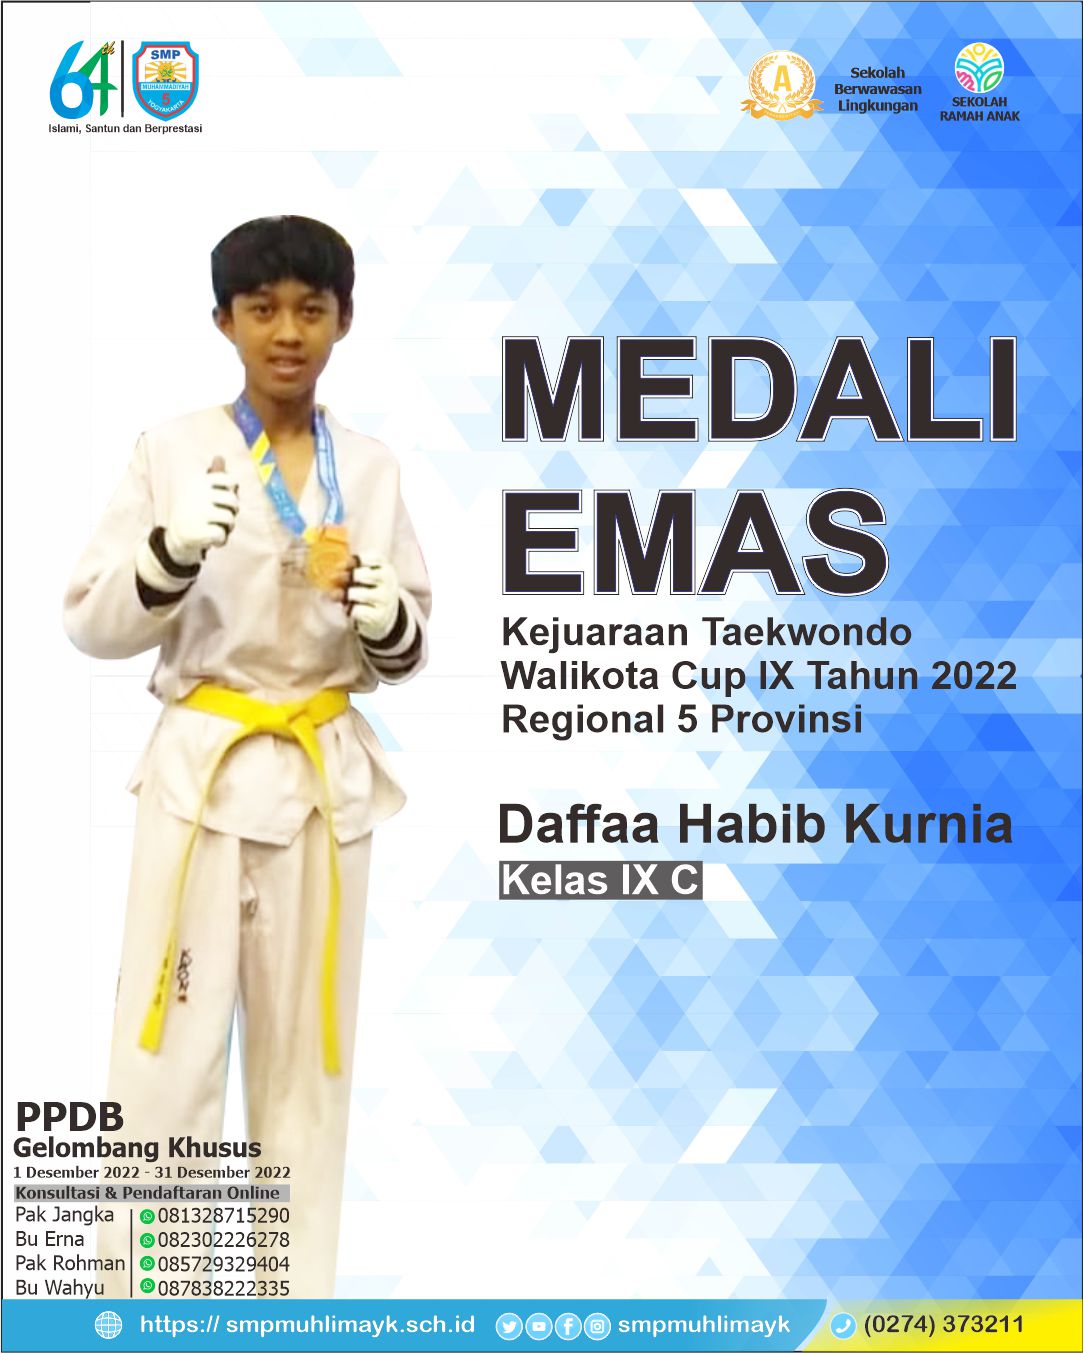 Medali Emas Kejuaraan Taekwondo Walikota Cup IX Tahun 2022 Regional 5 Provinsi